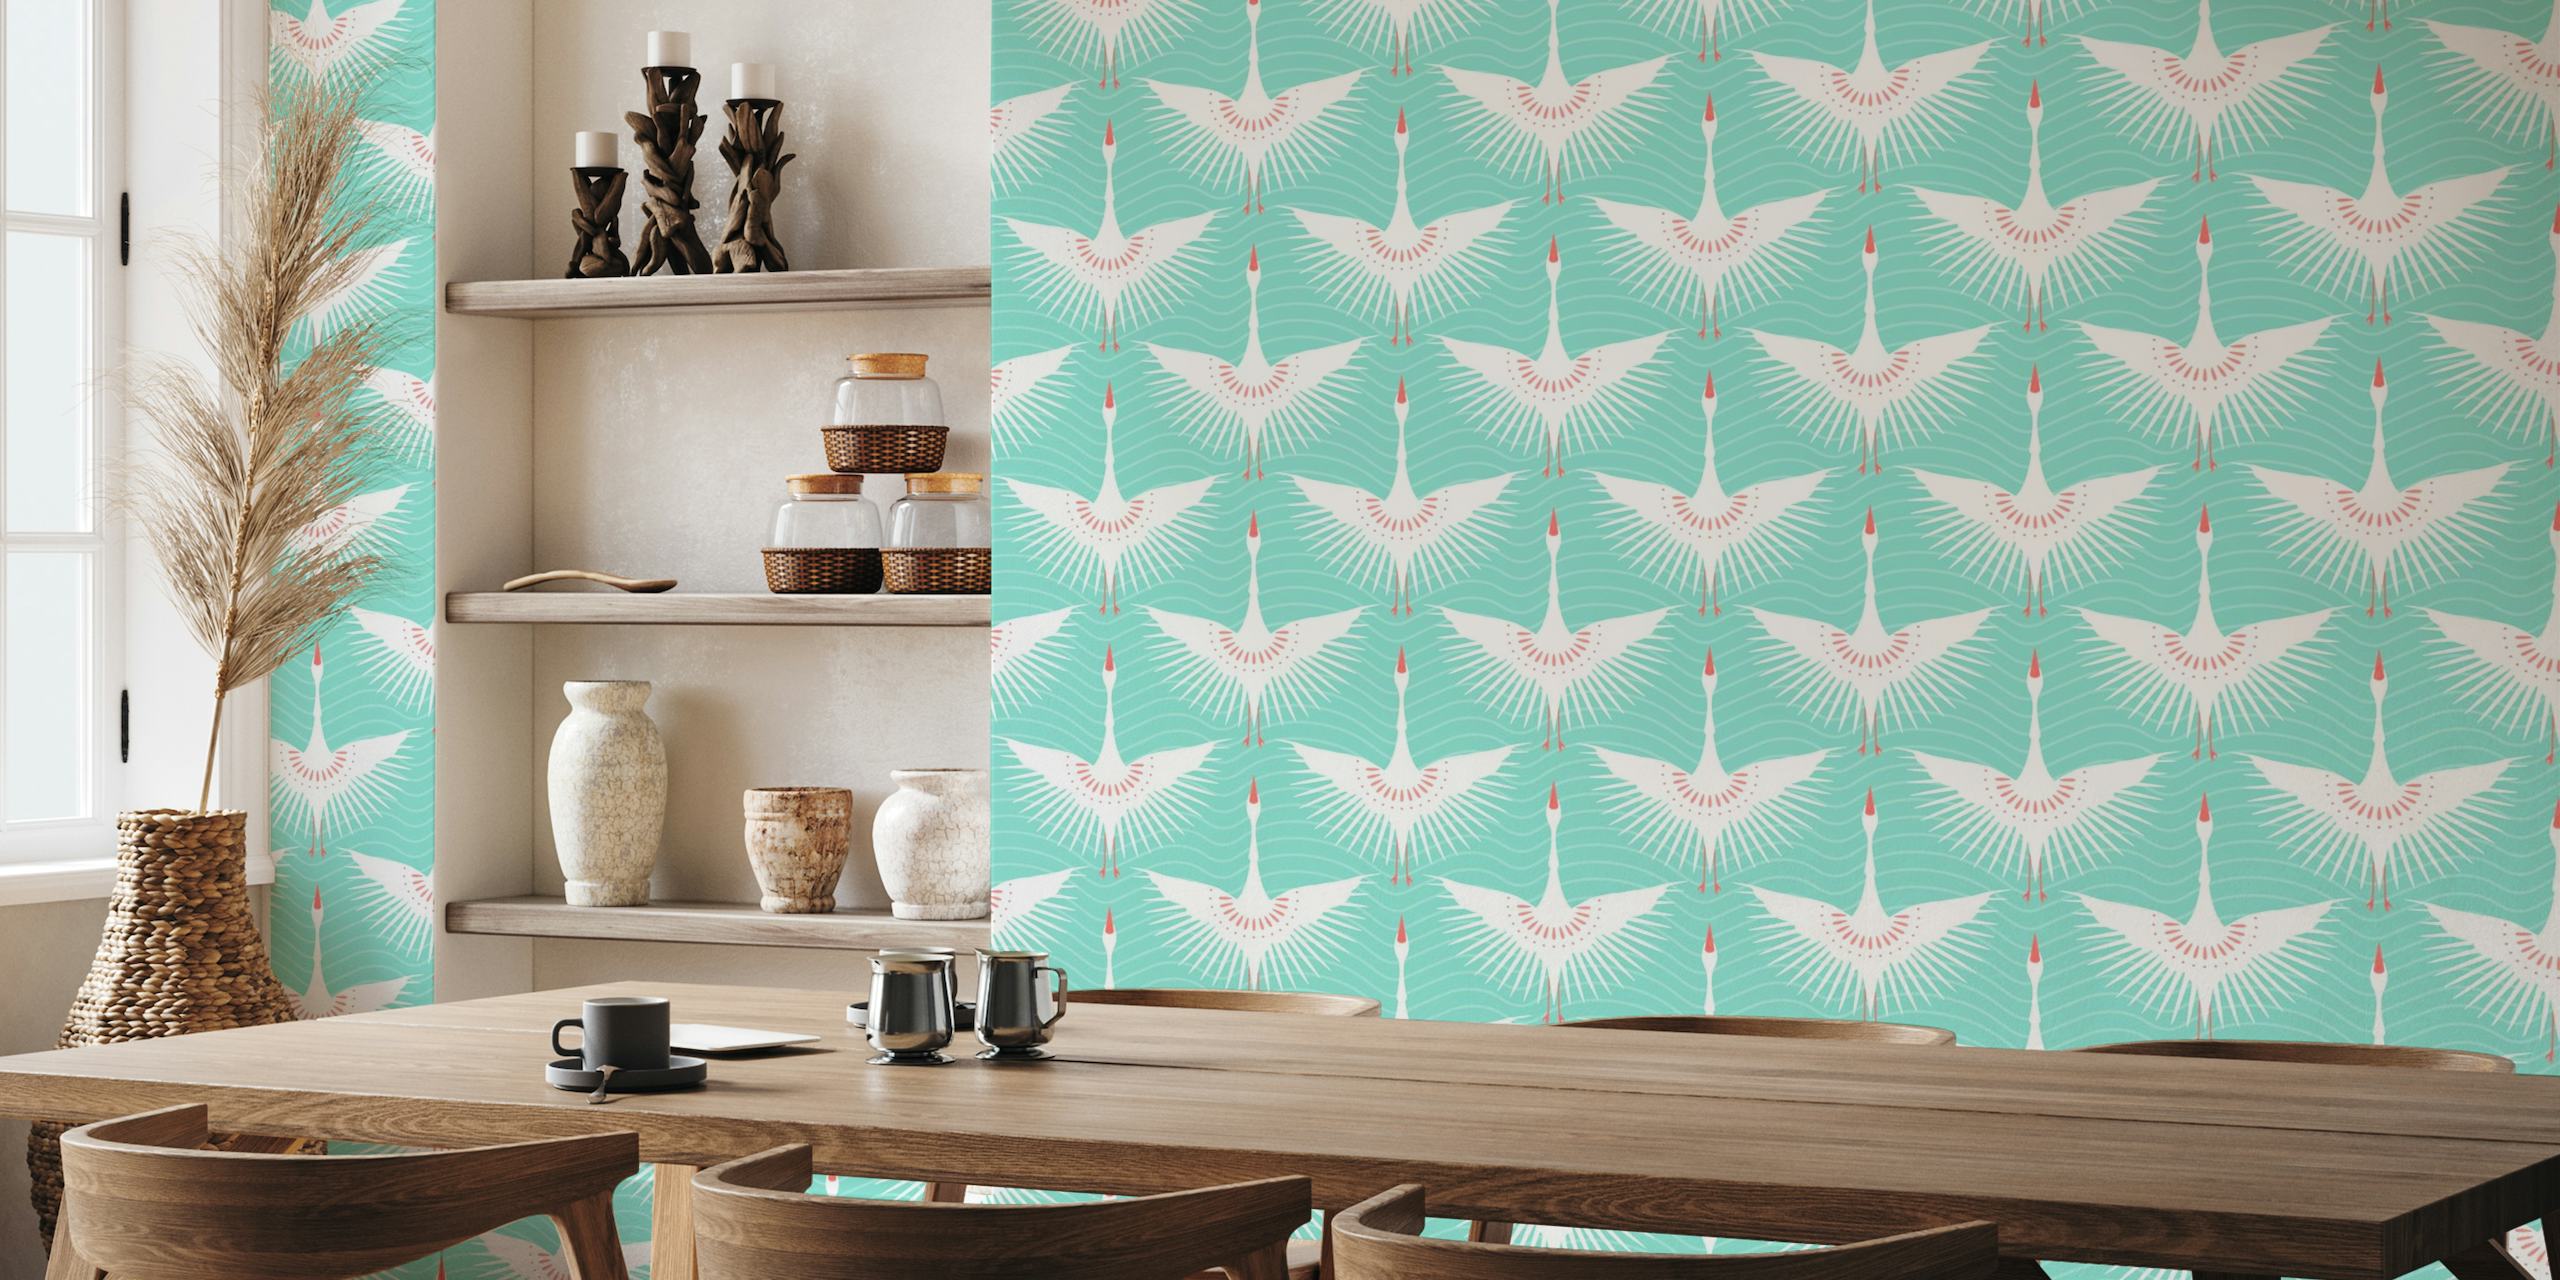 Flying Cranes Art Deco Birds Migration Cool Mint wallpaper